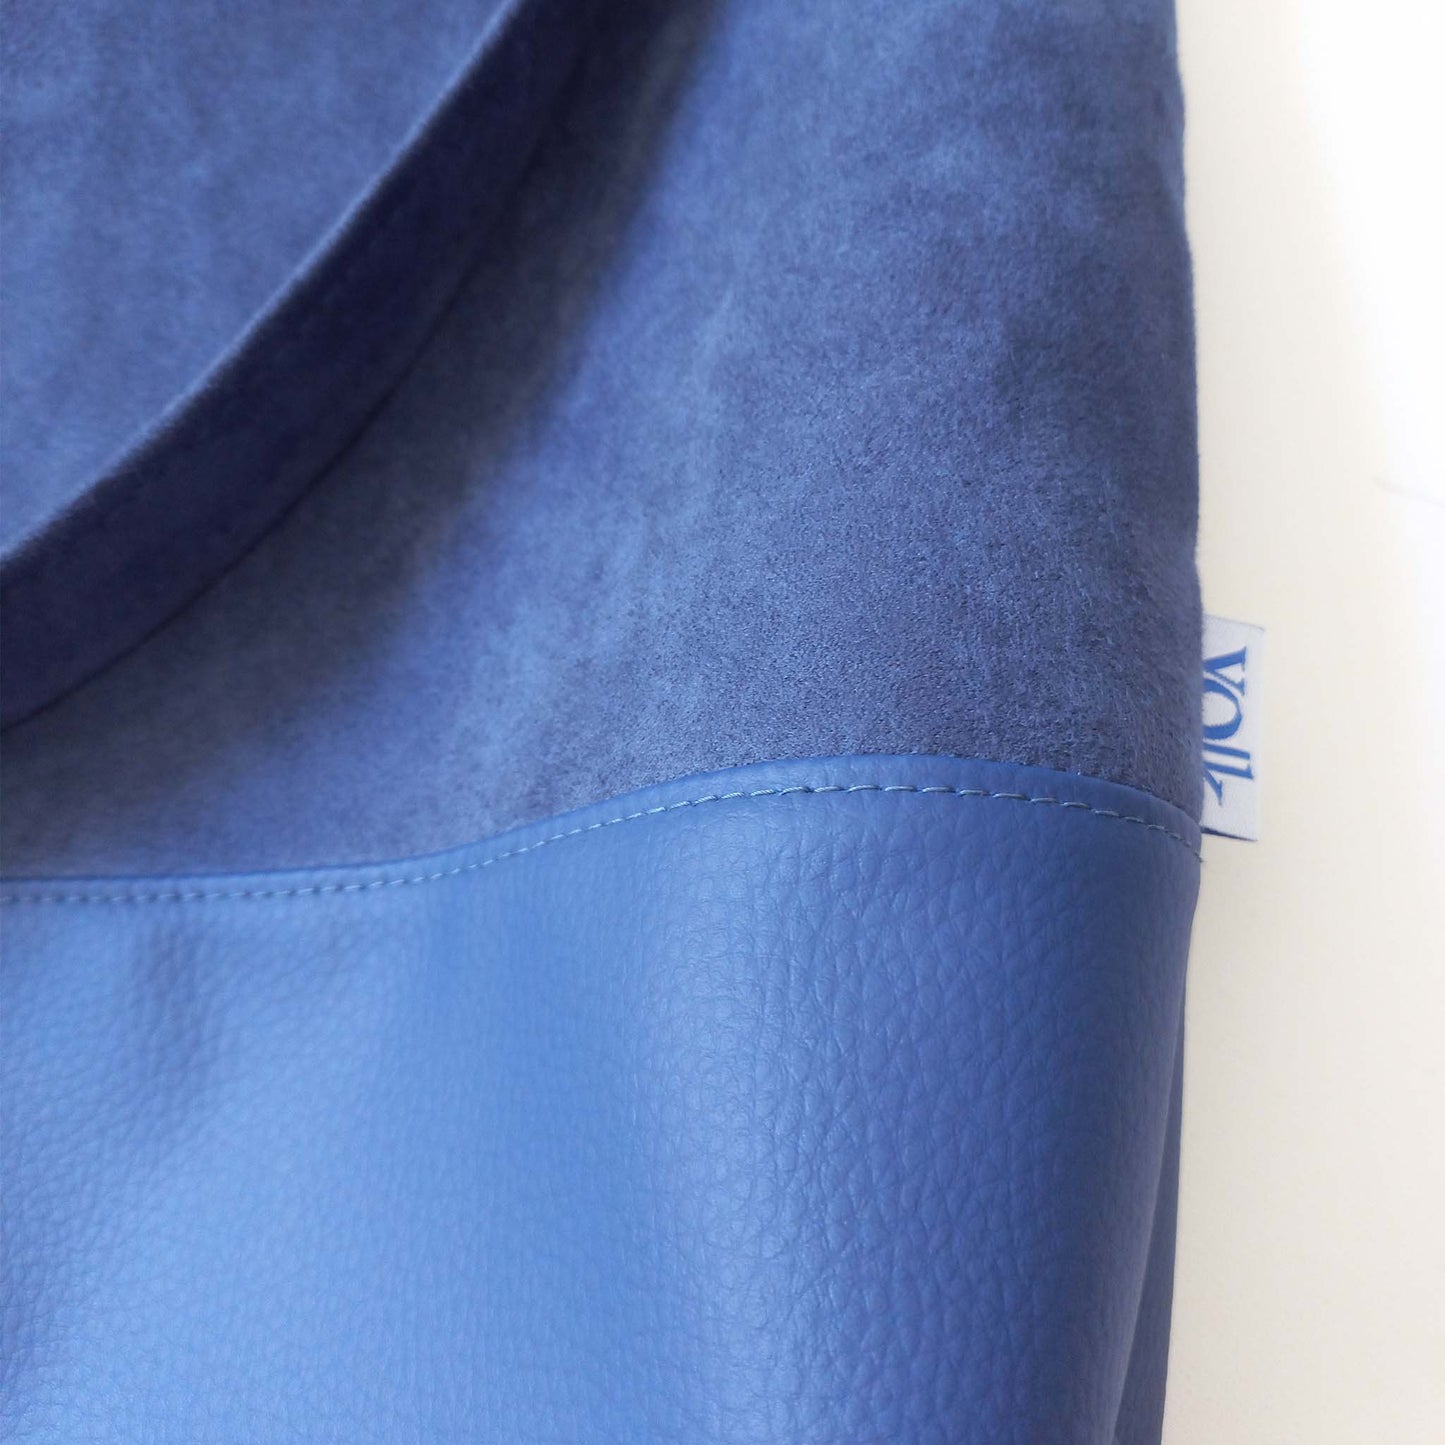 Yolk shoulder bag, vegan leather and suede detail